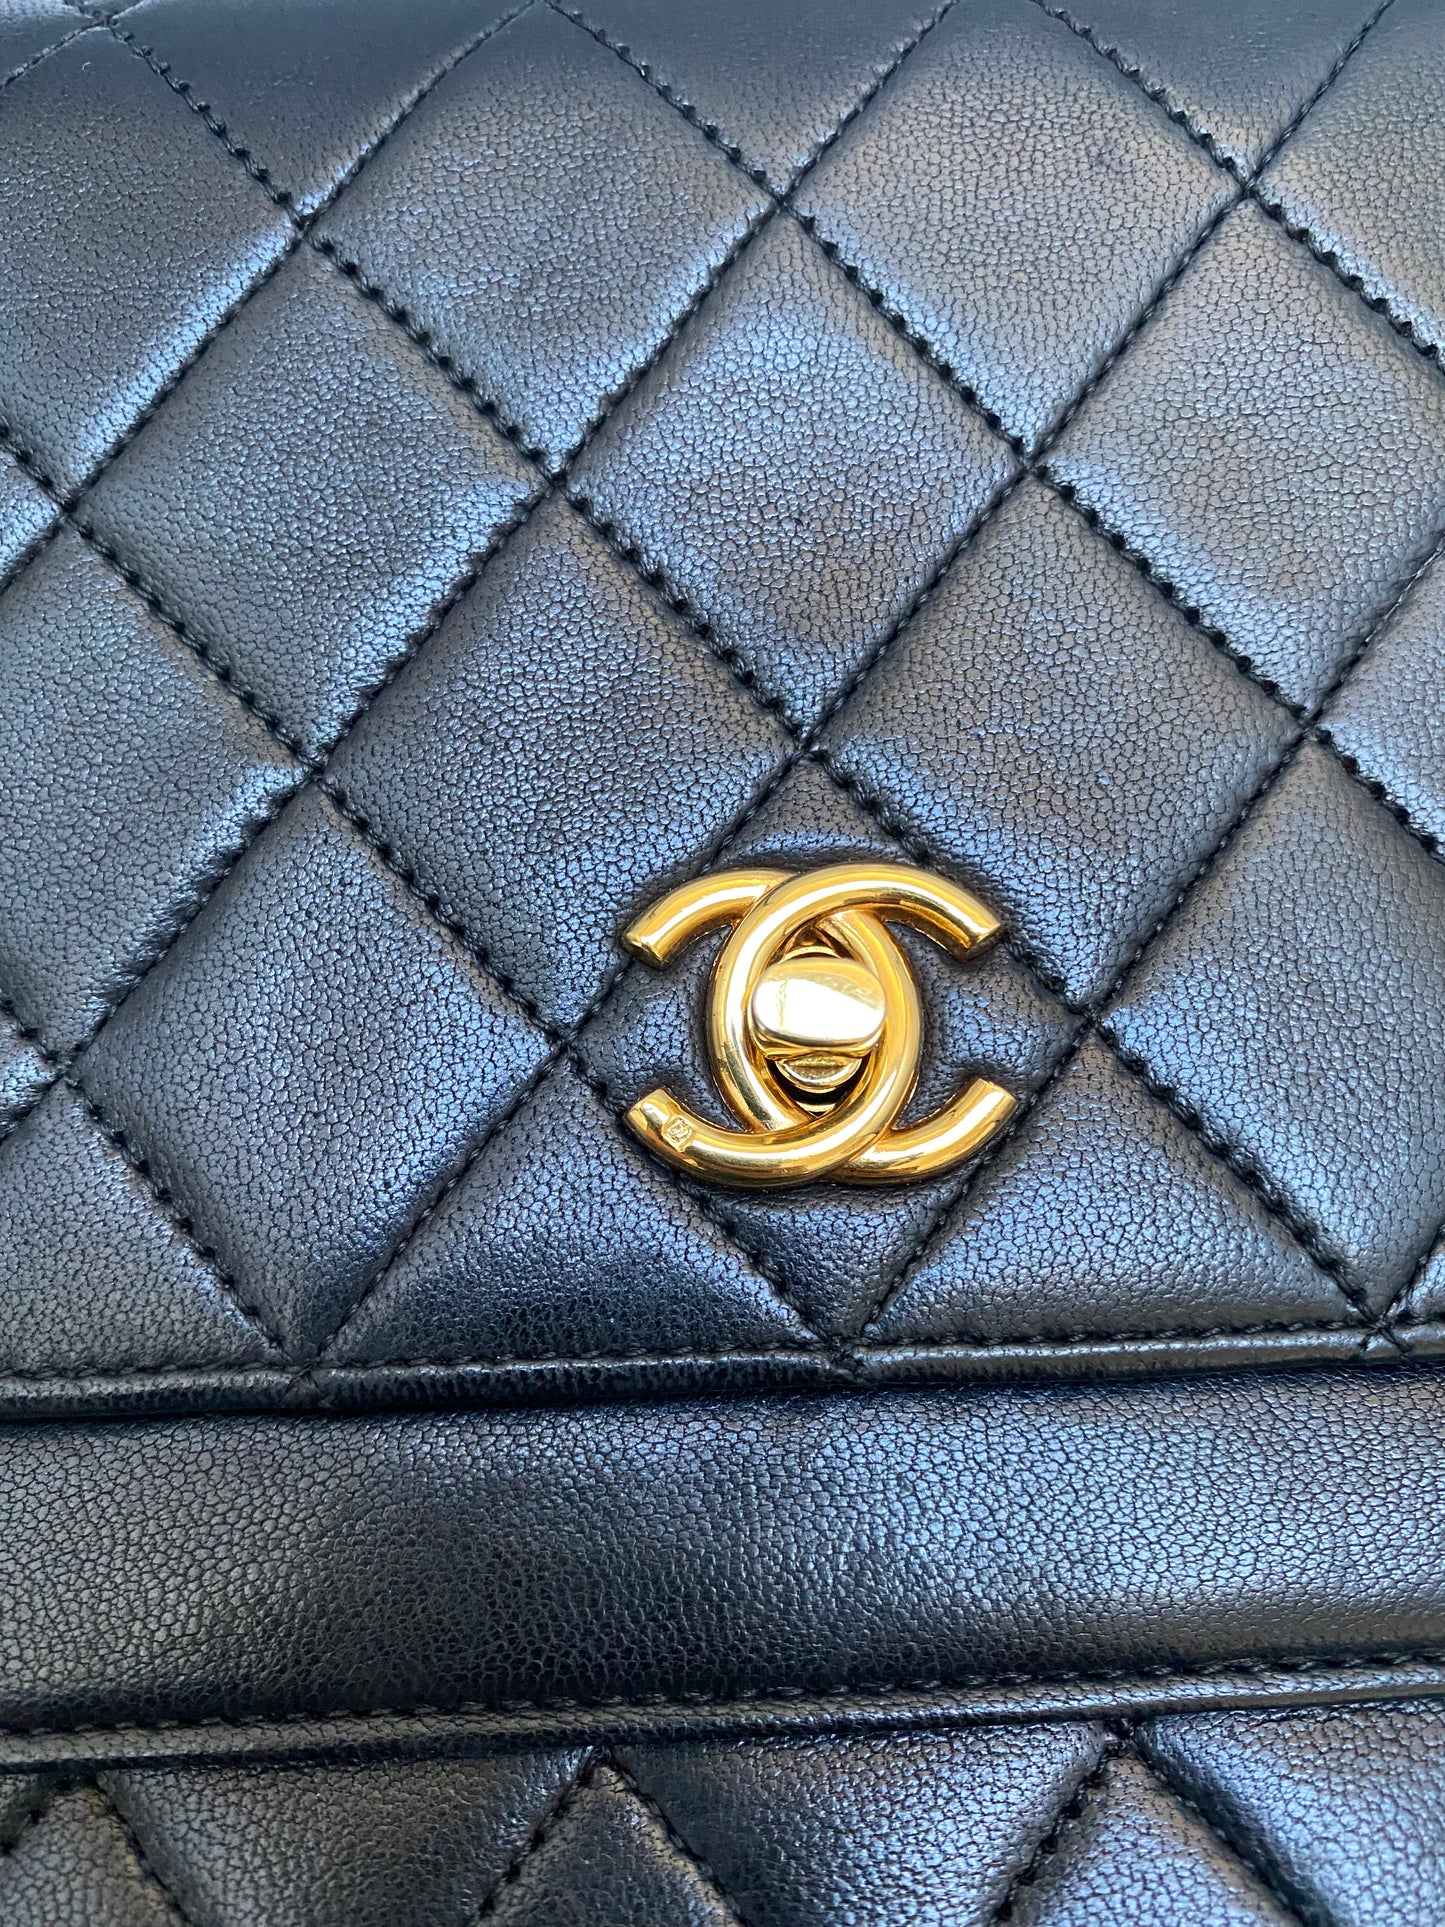 Chanel vintage black quilted flap bag